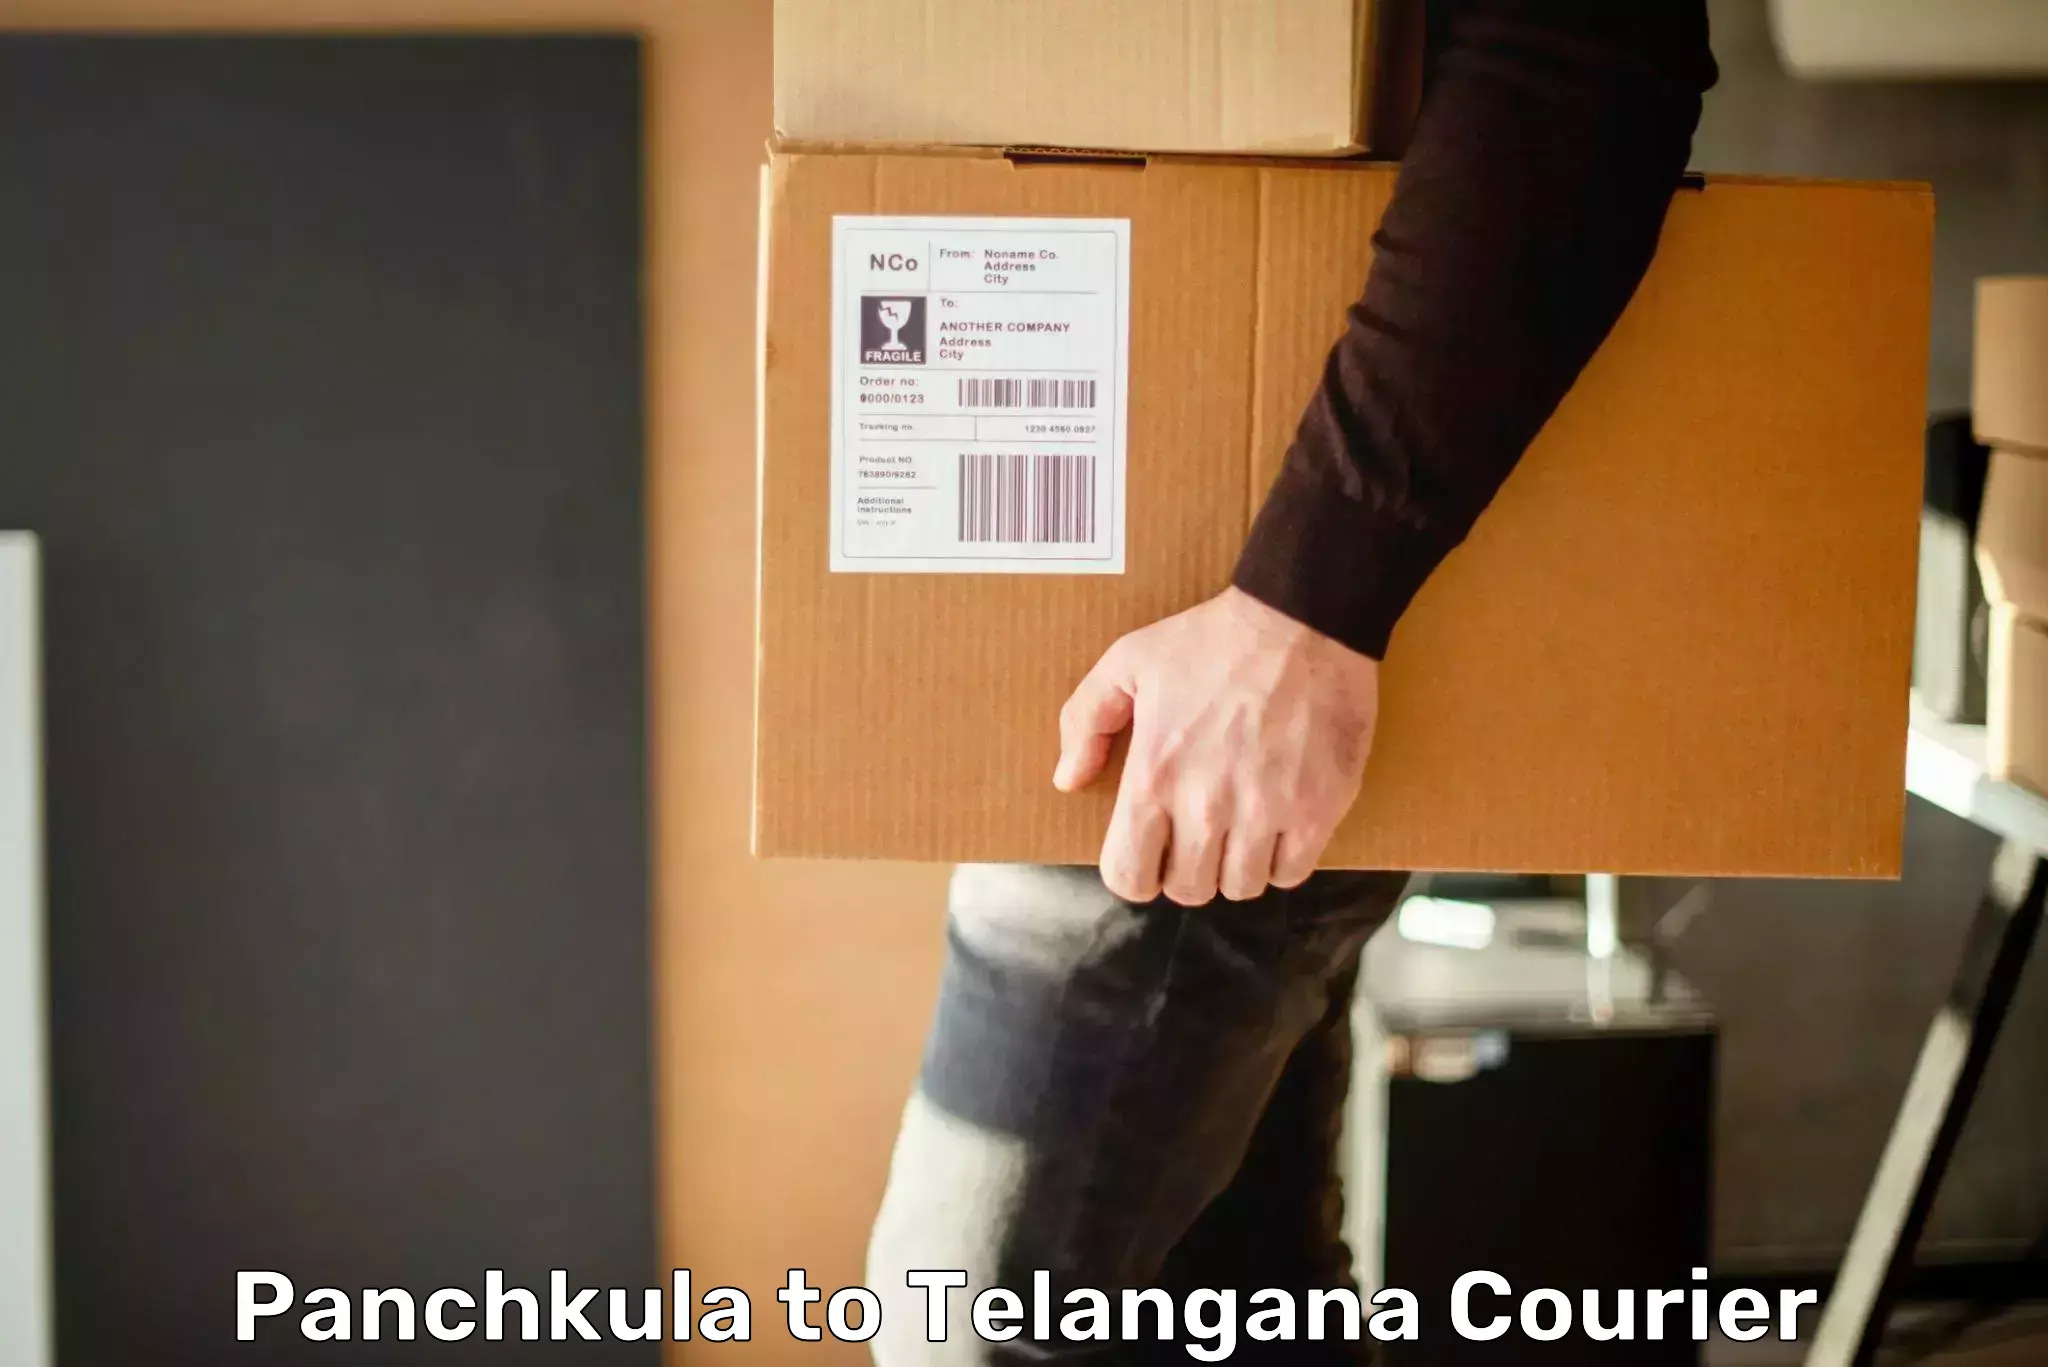 Individual parcel service Panchkula to Telangana